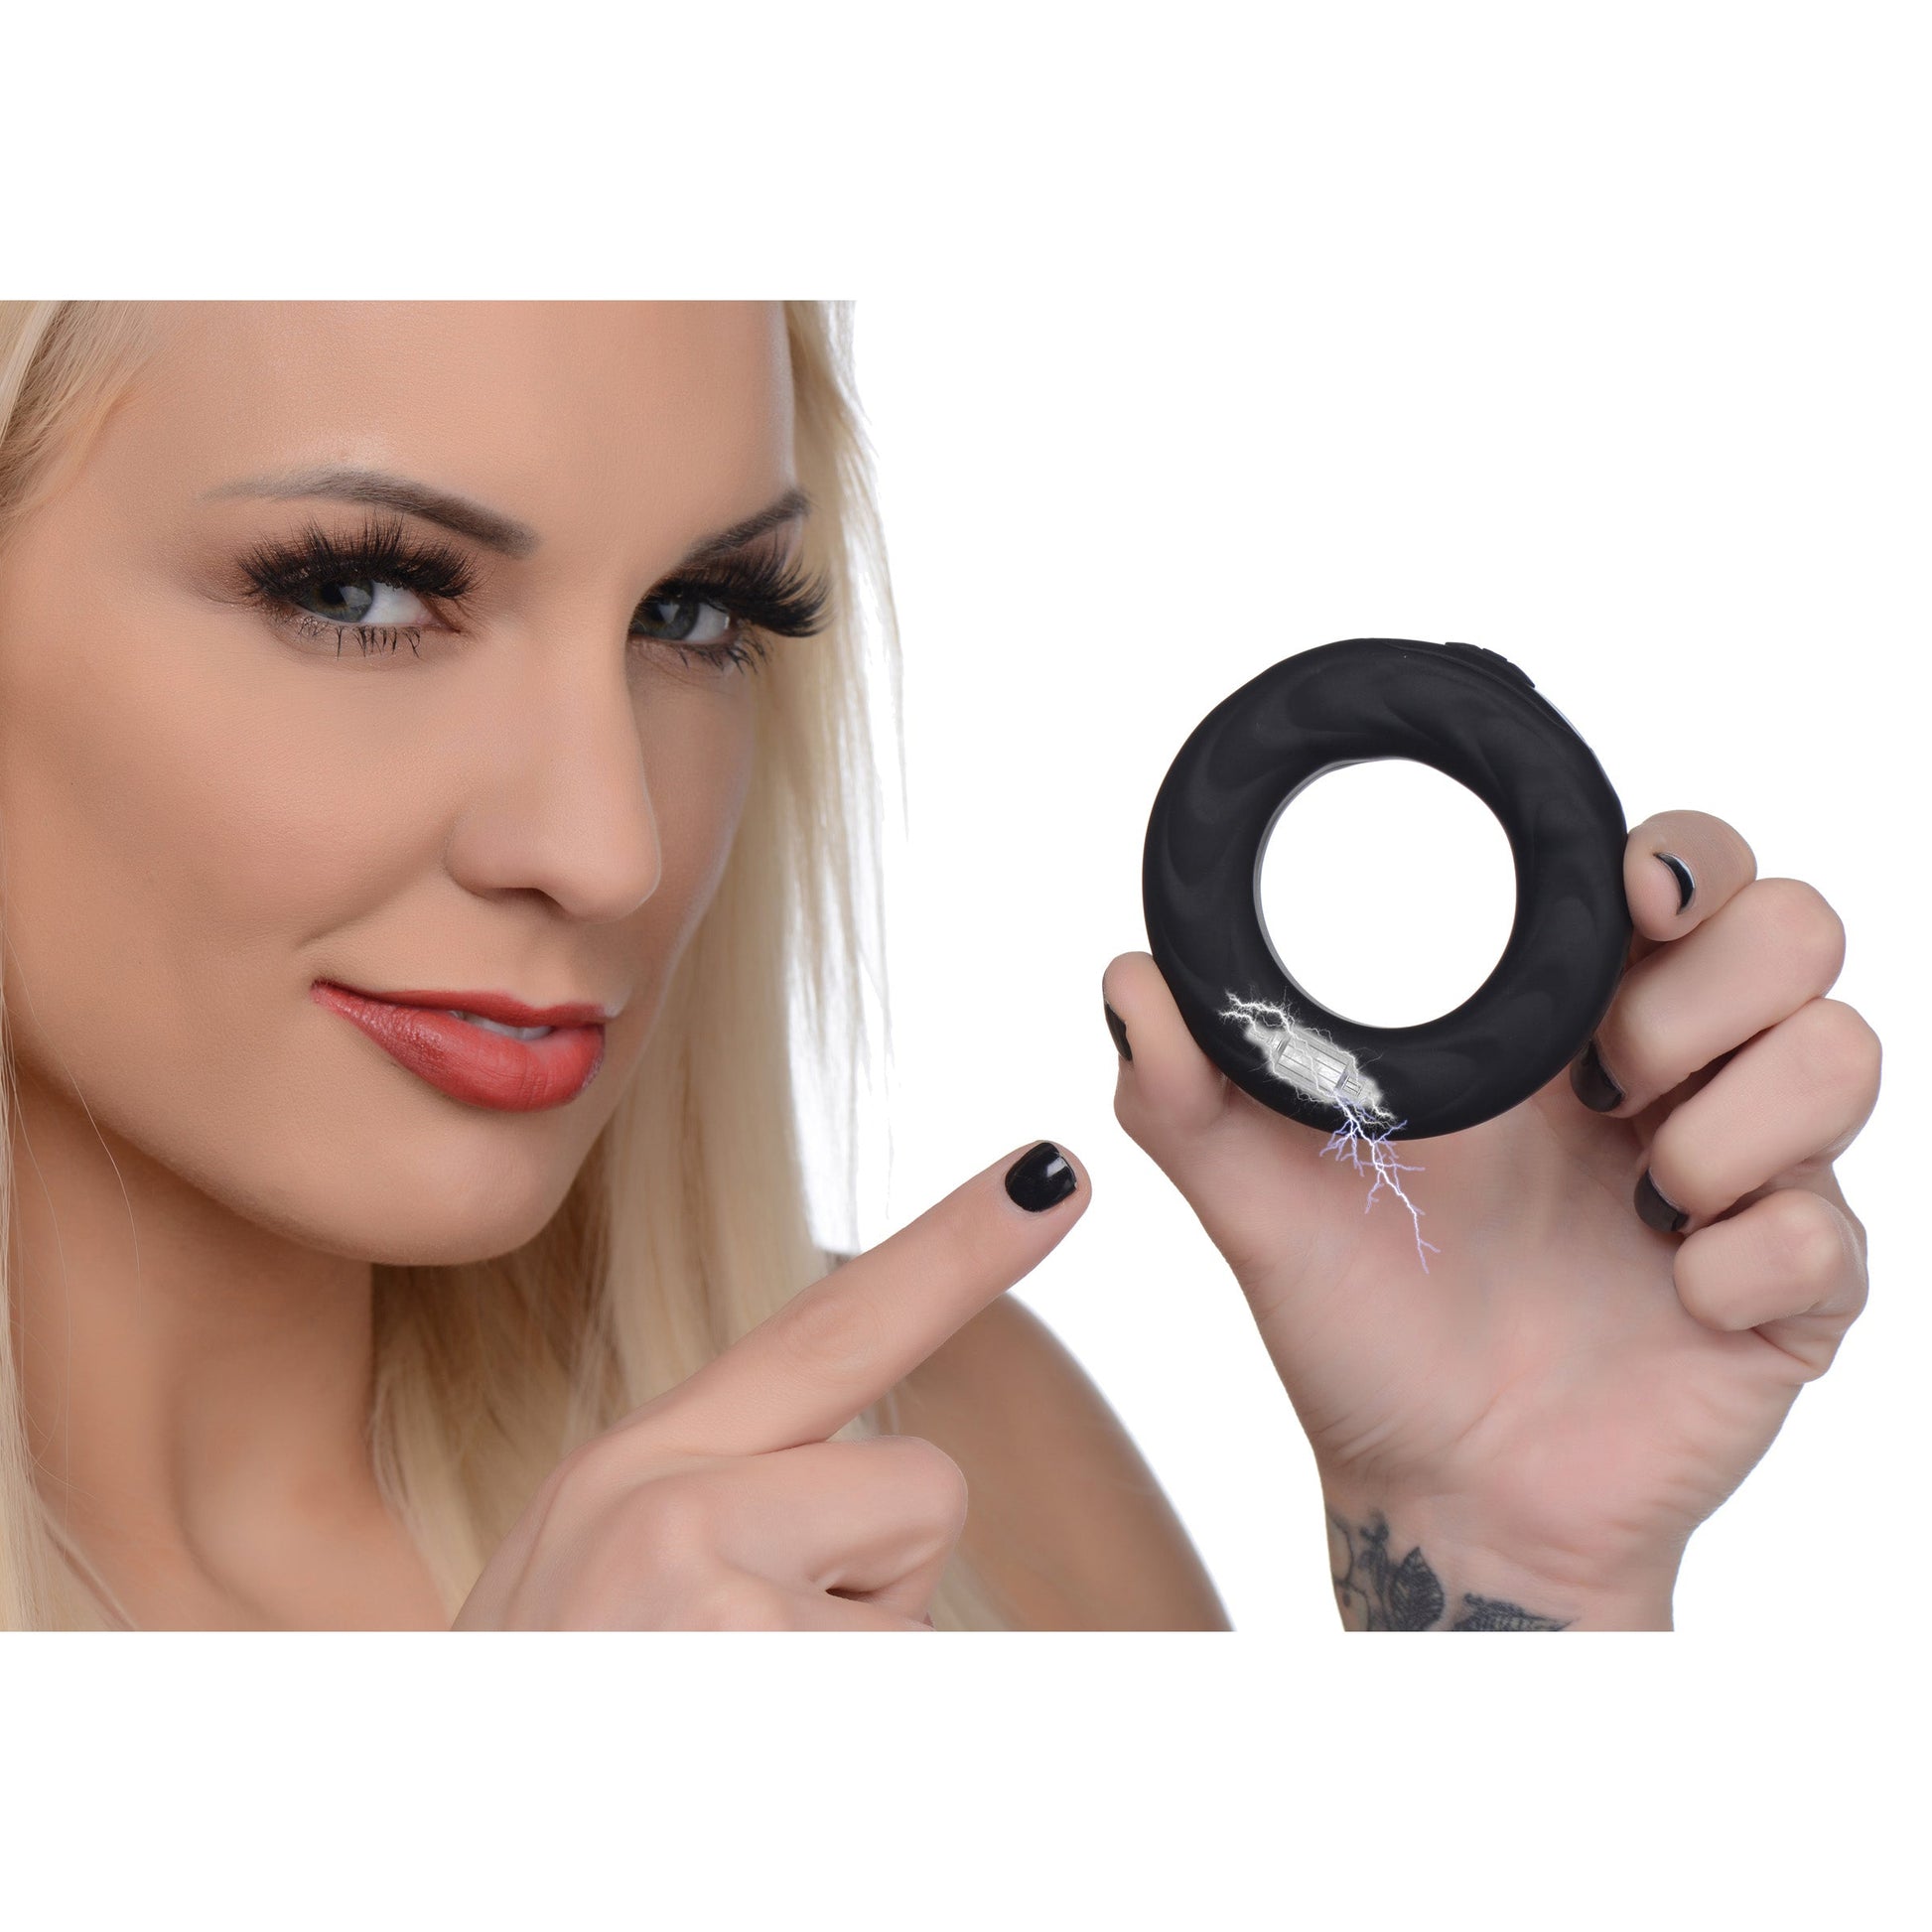 E-Stim Pro Silicone Cock Ring With Remote - Black